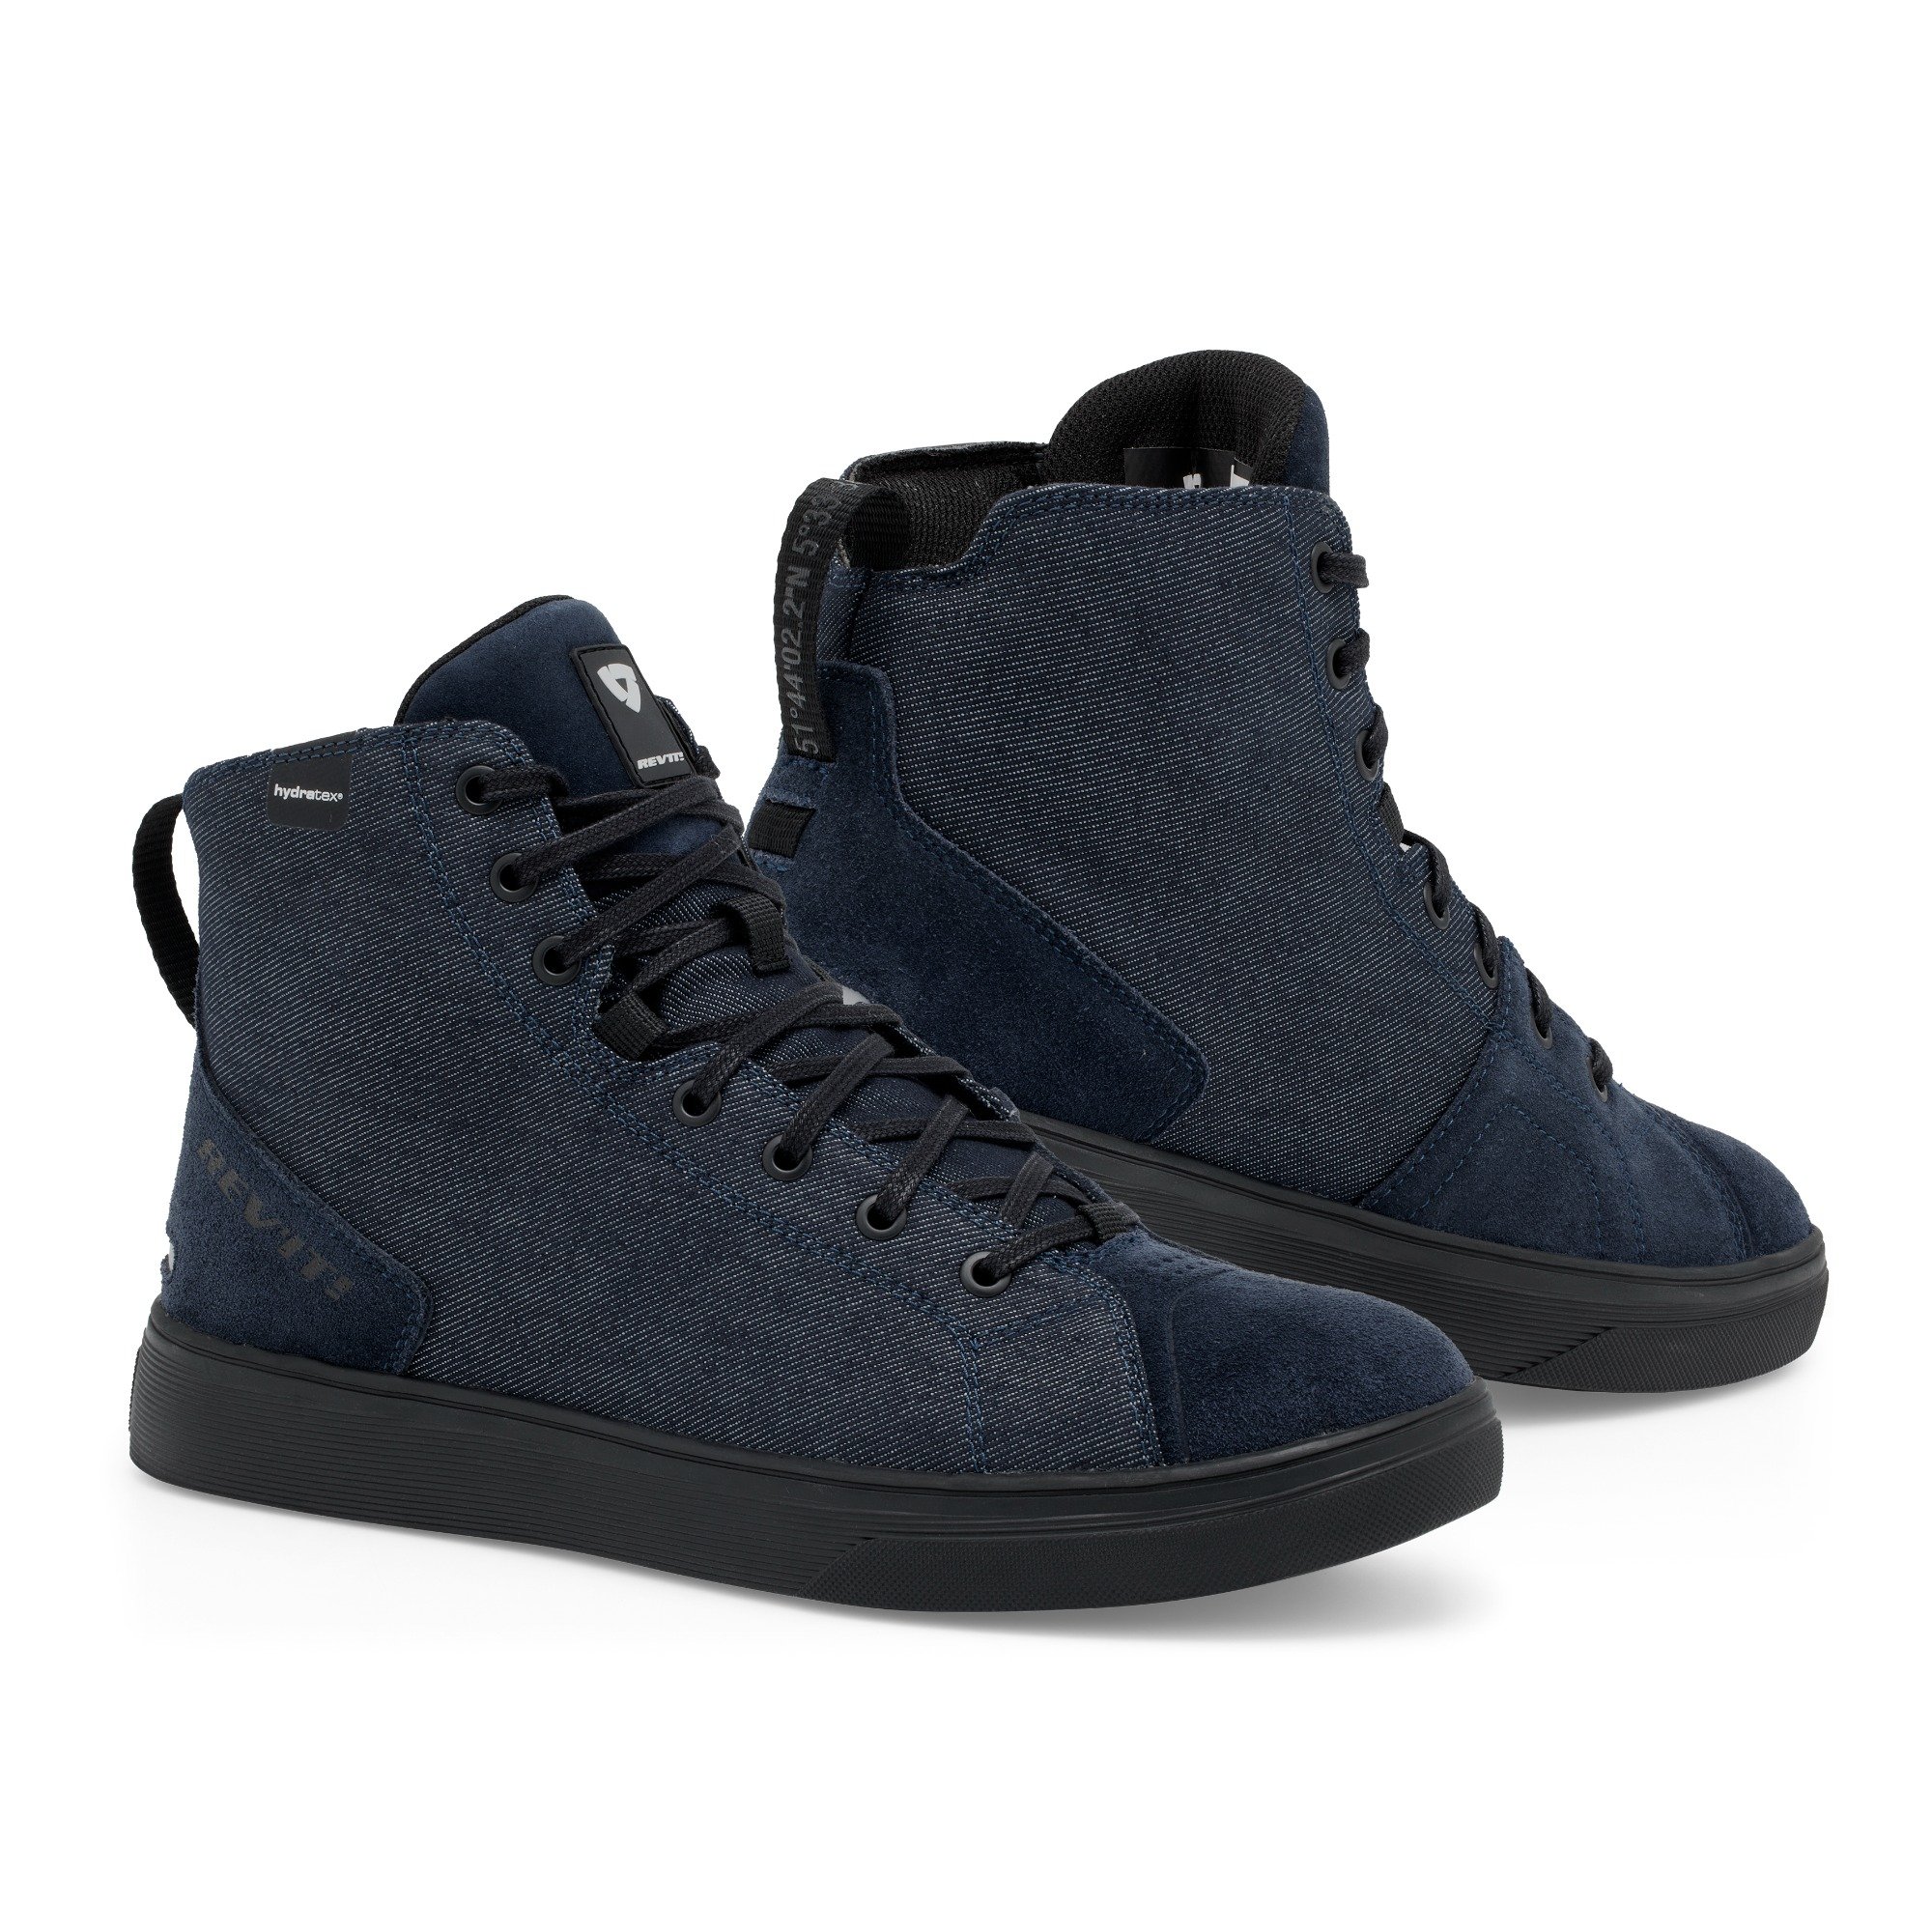 Image of REV'IT! Delta H2O Shoes Dark Blue Black Size 44 EN